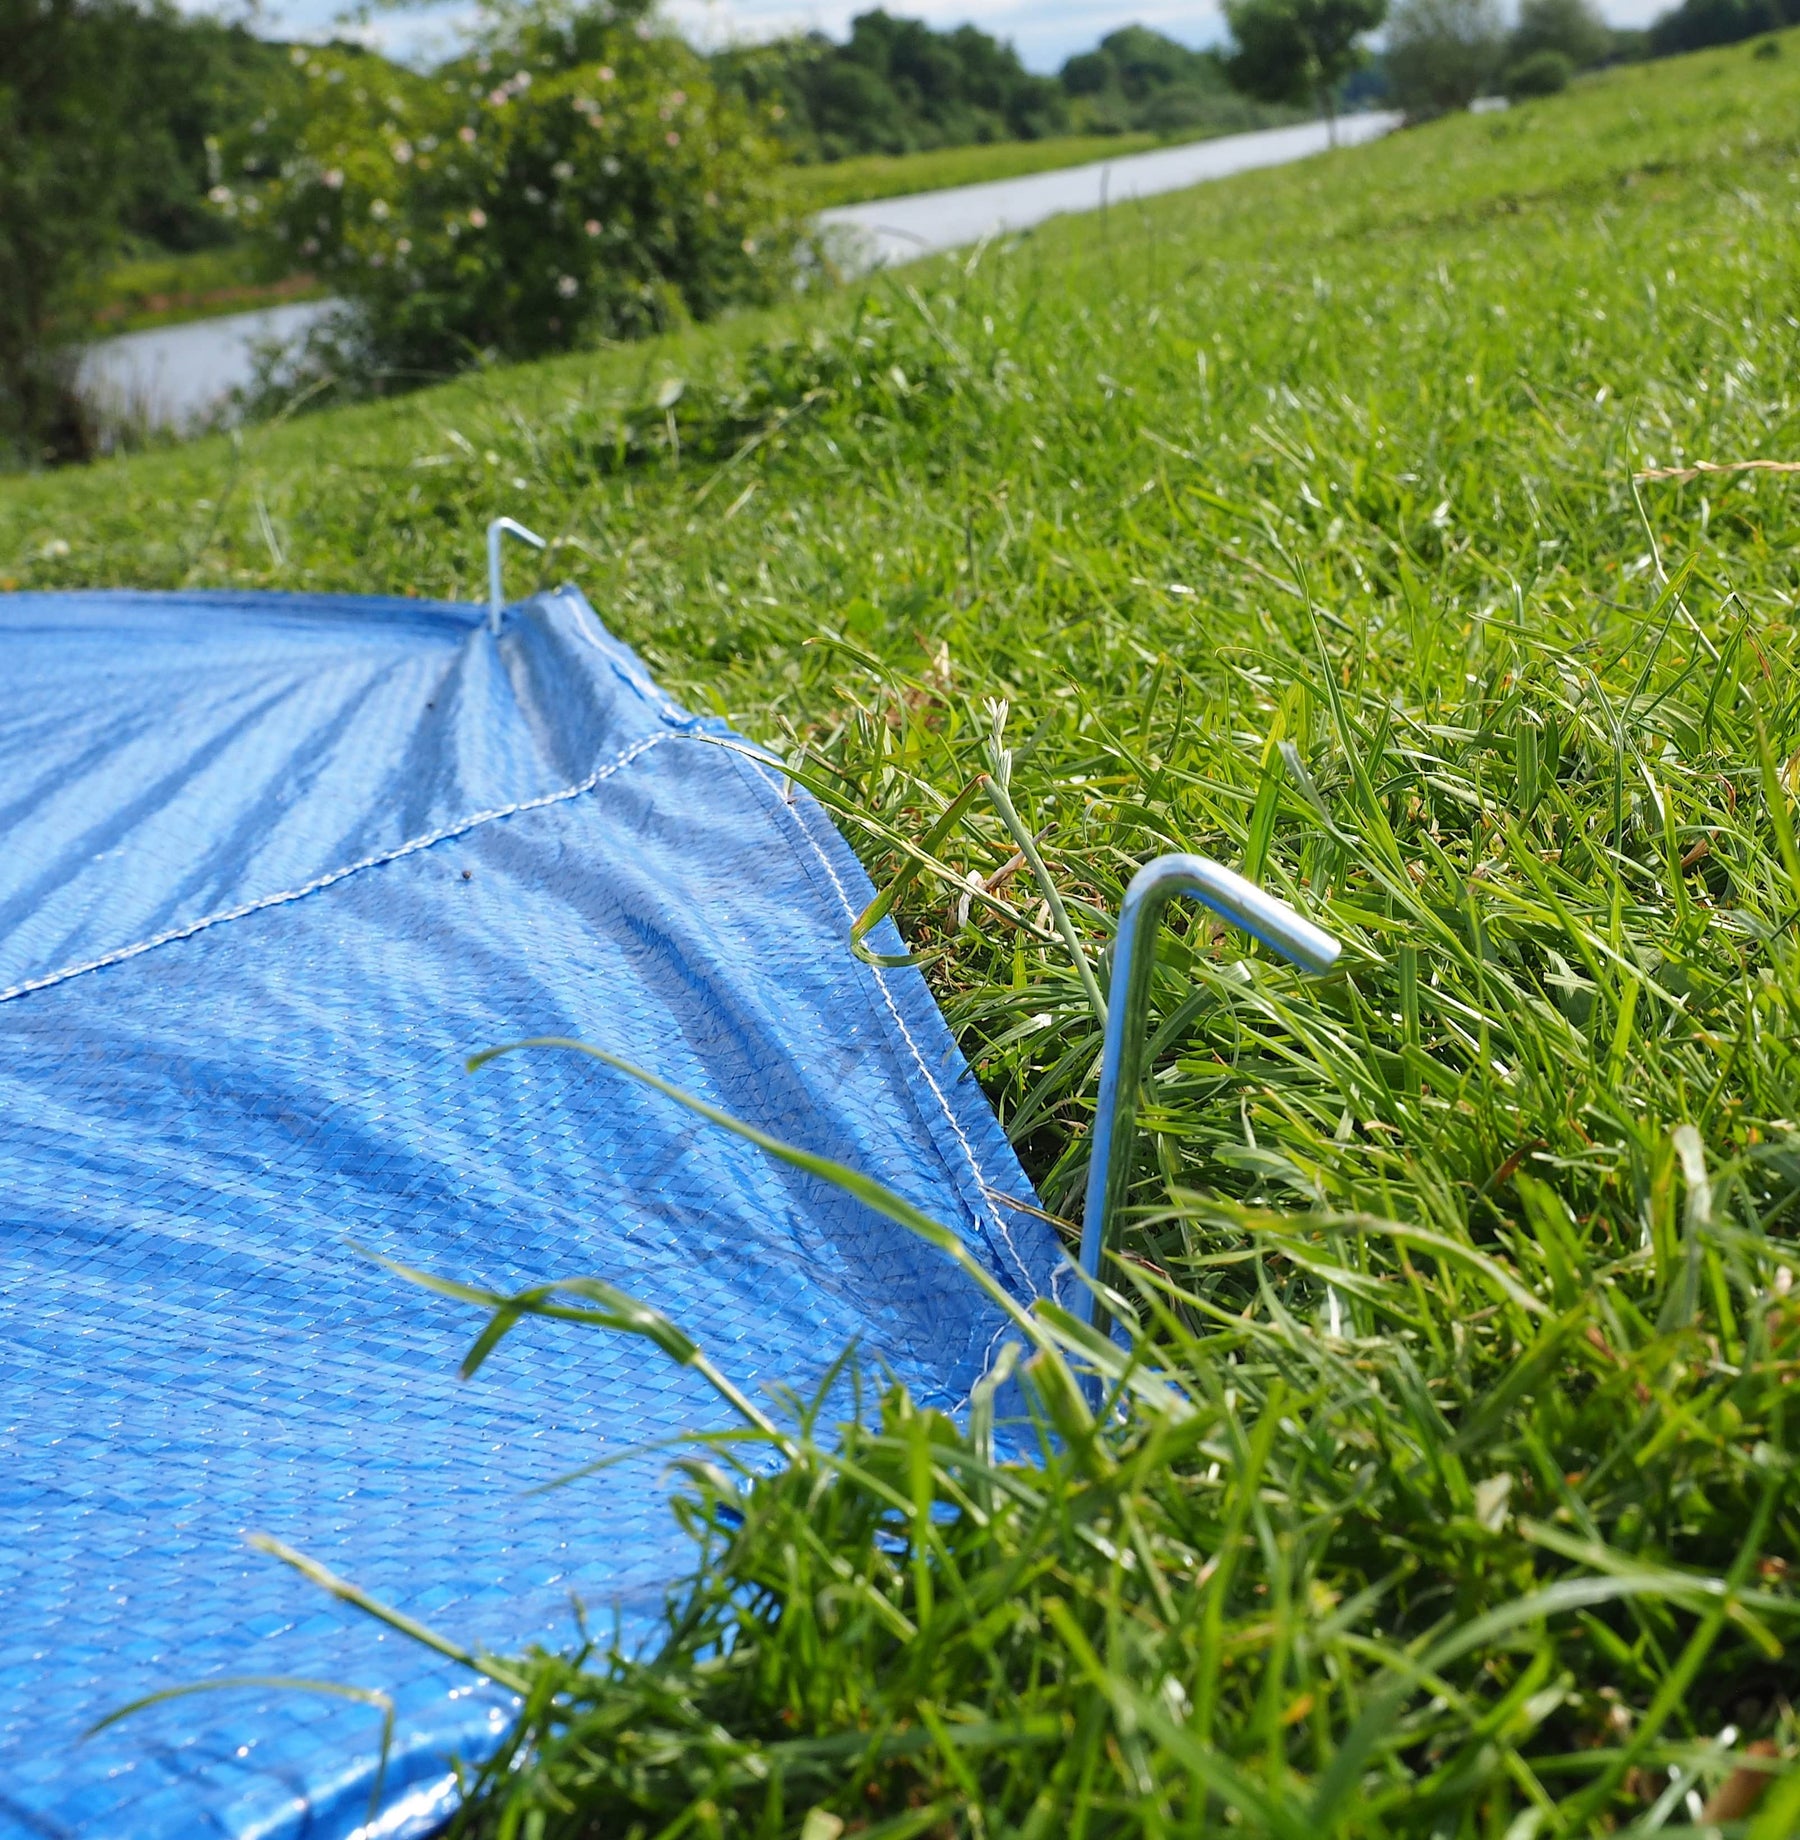 3m Bell tent Footprint - Bell Tent Groundsheet Protector